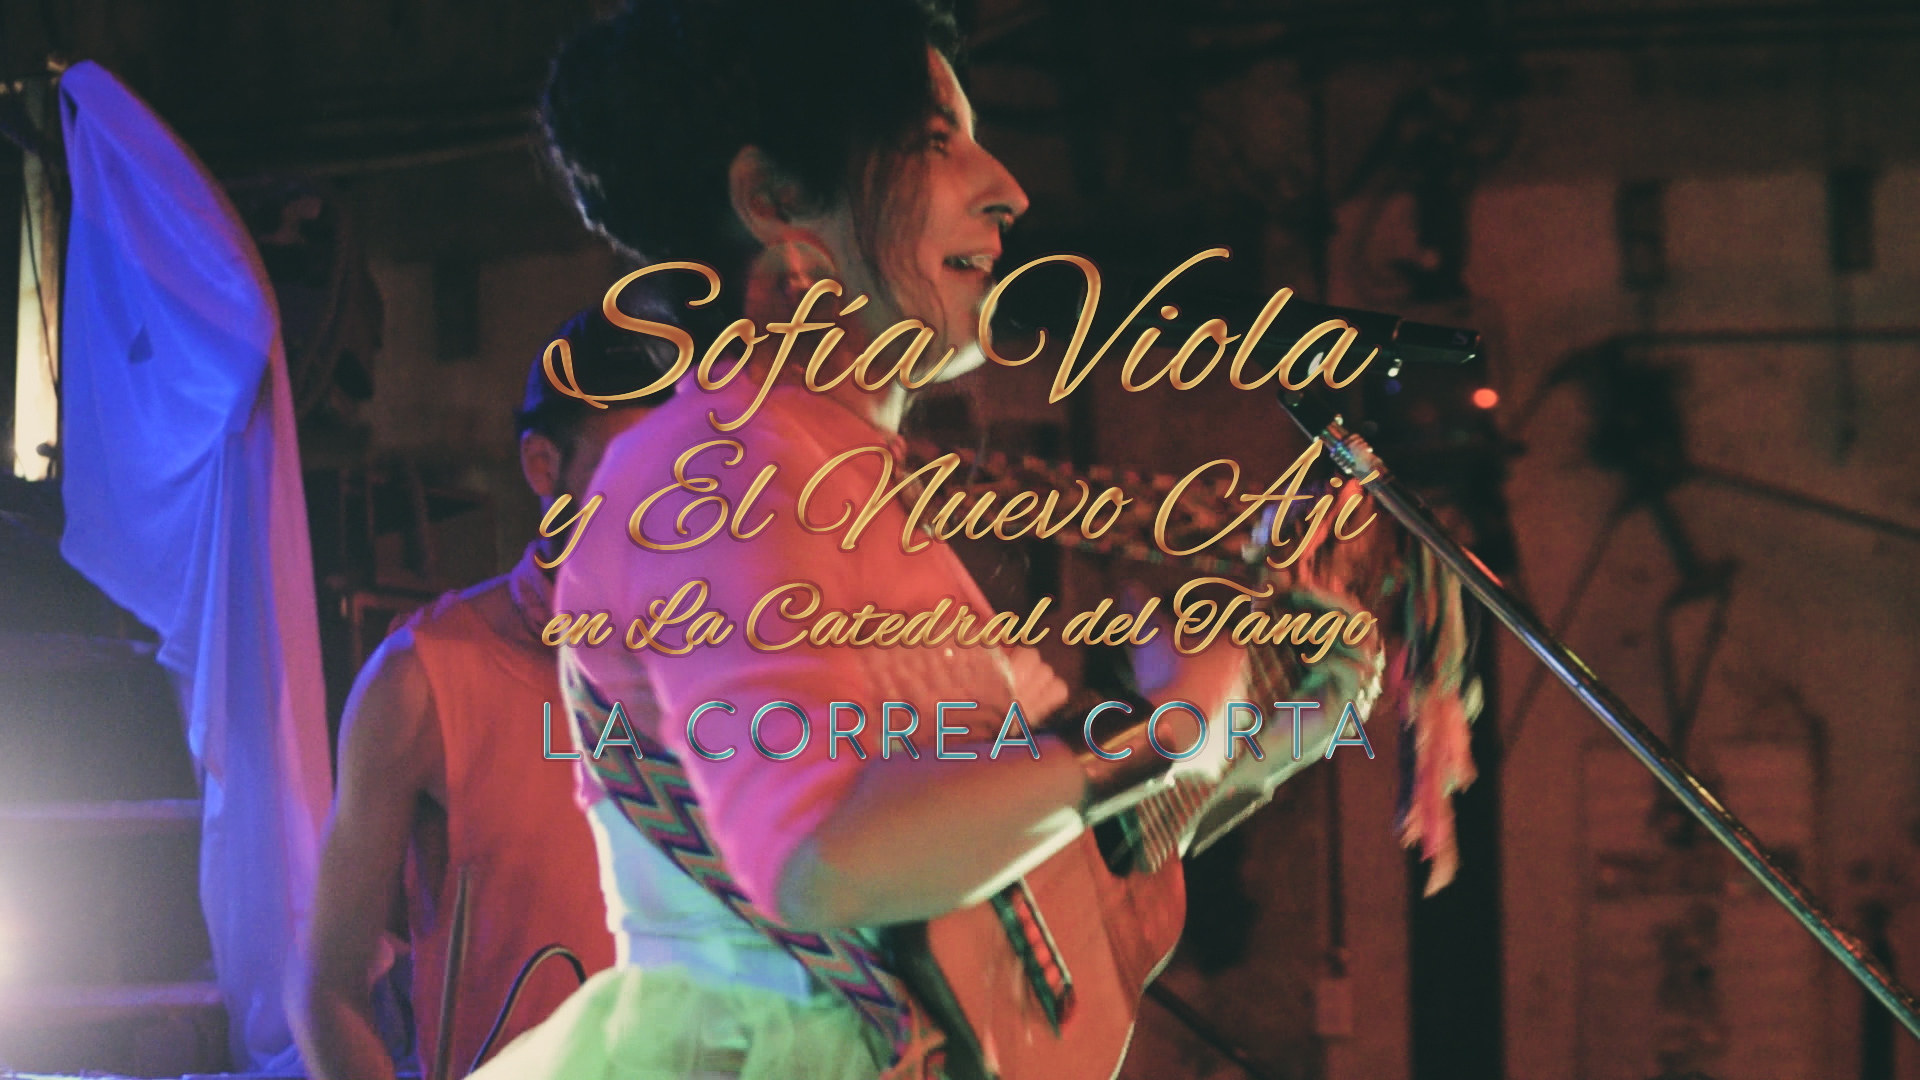 Sofía Viola | La correa corta